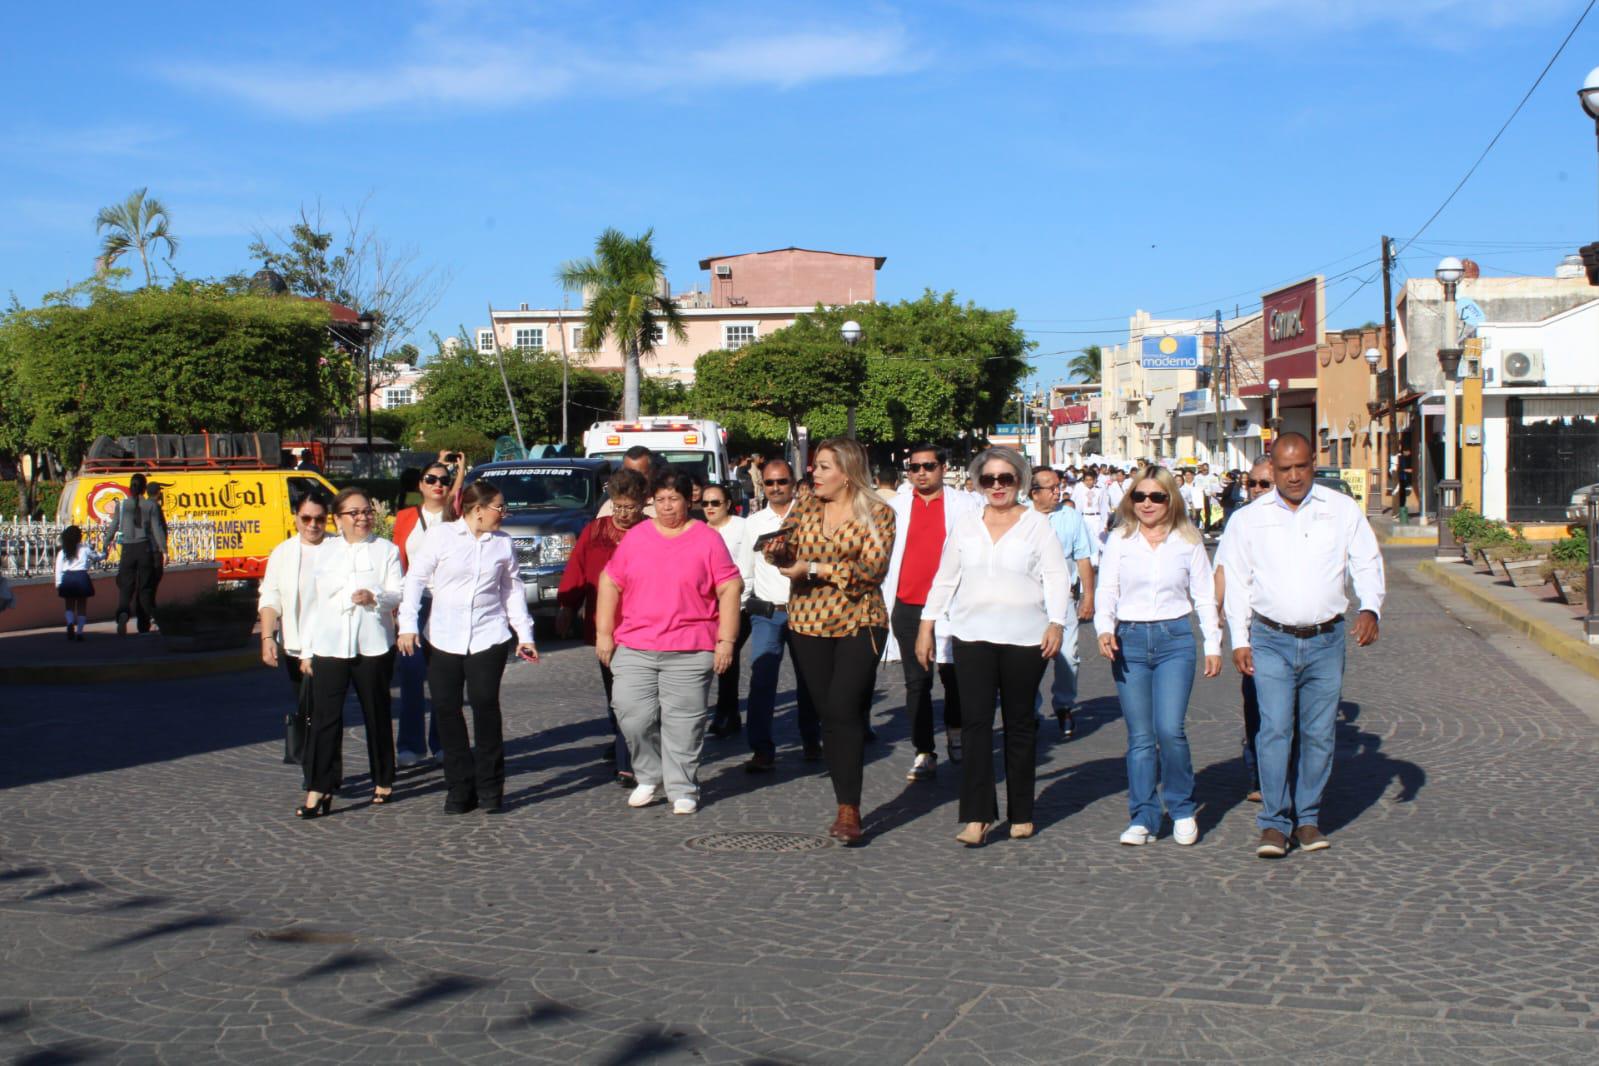 $!Desfilan en Rosario para promover la inclusión de personas con discapacidad